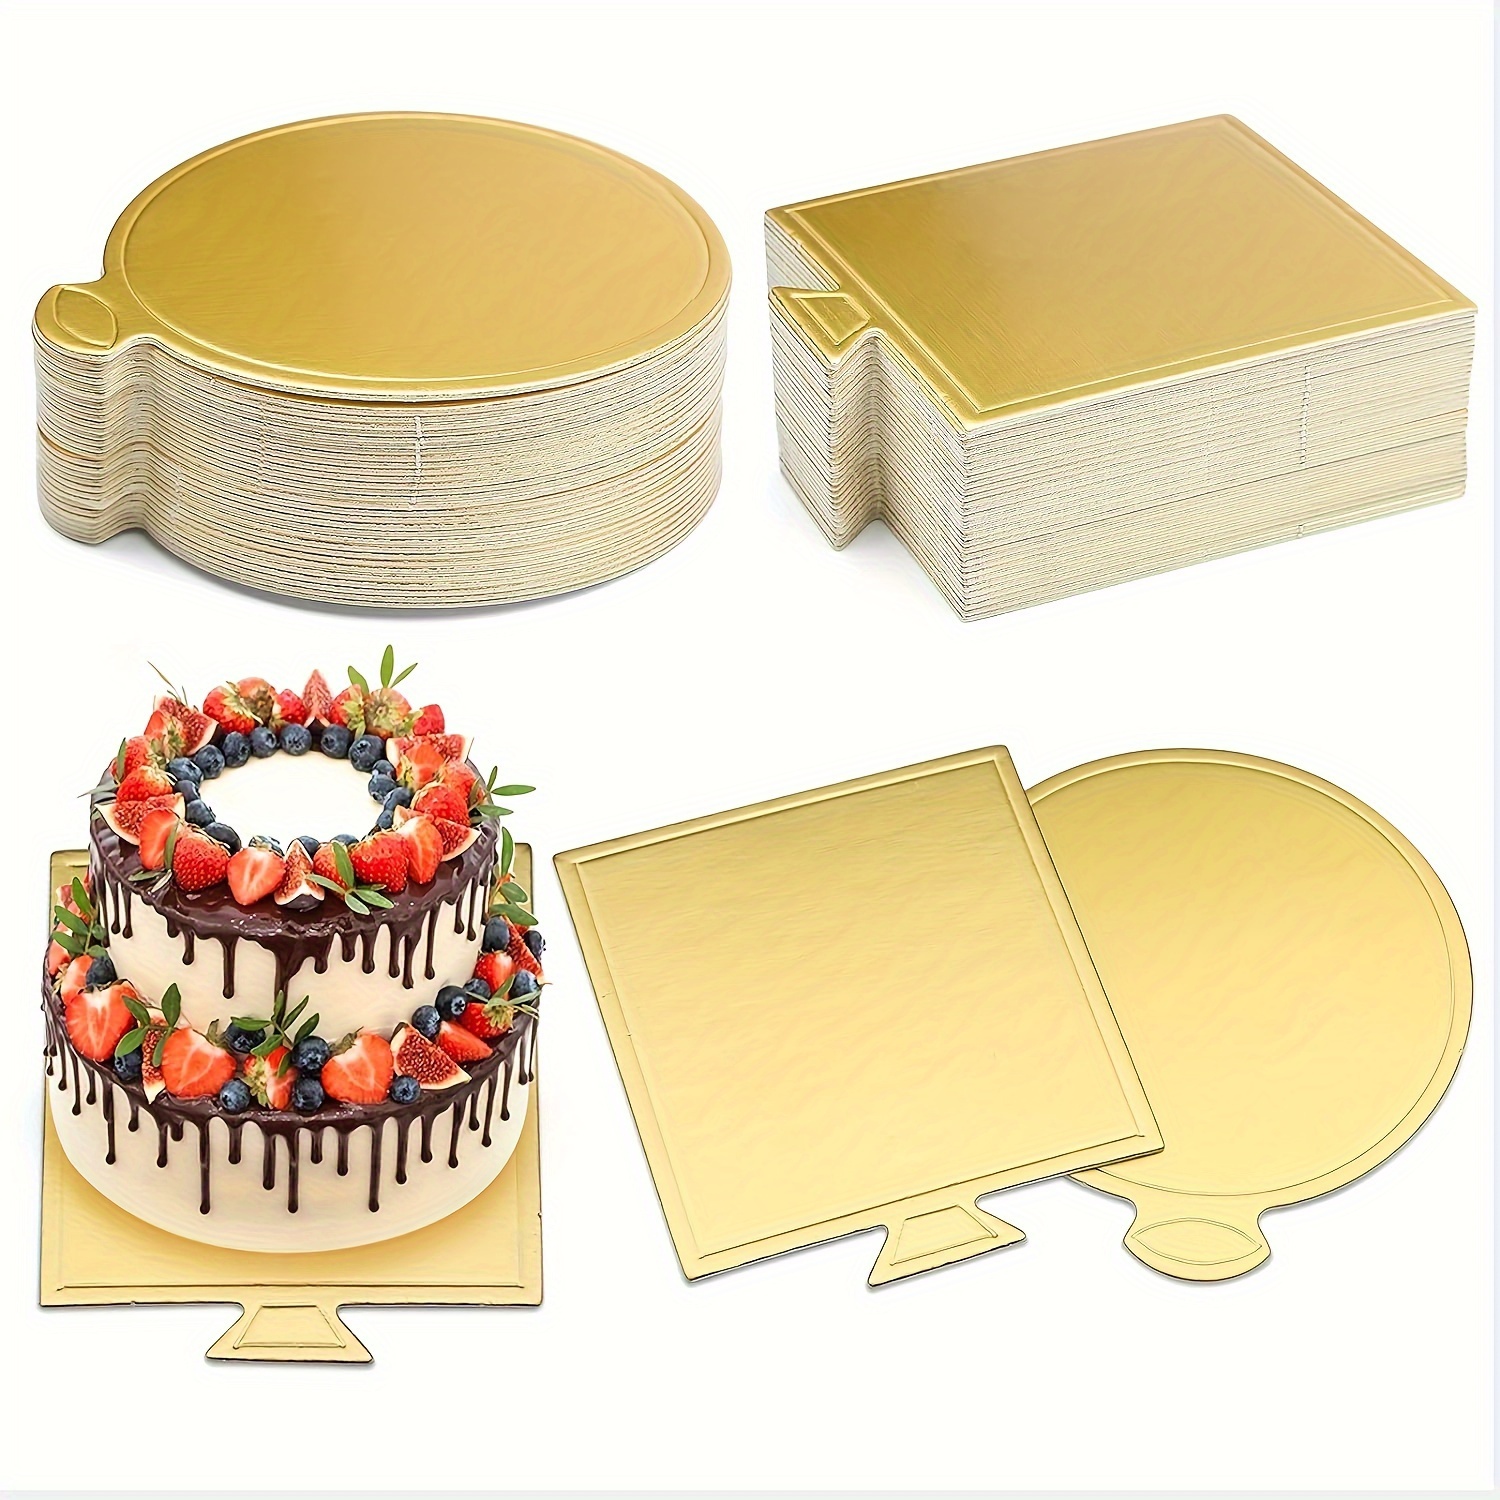 UPlama Lot de 200 mini planches à gâteau rondes en papier doré